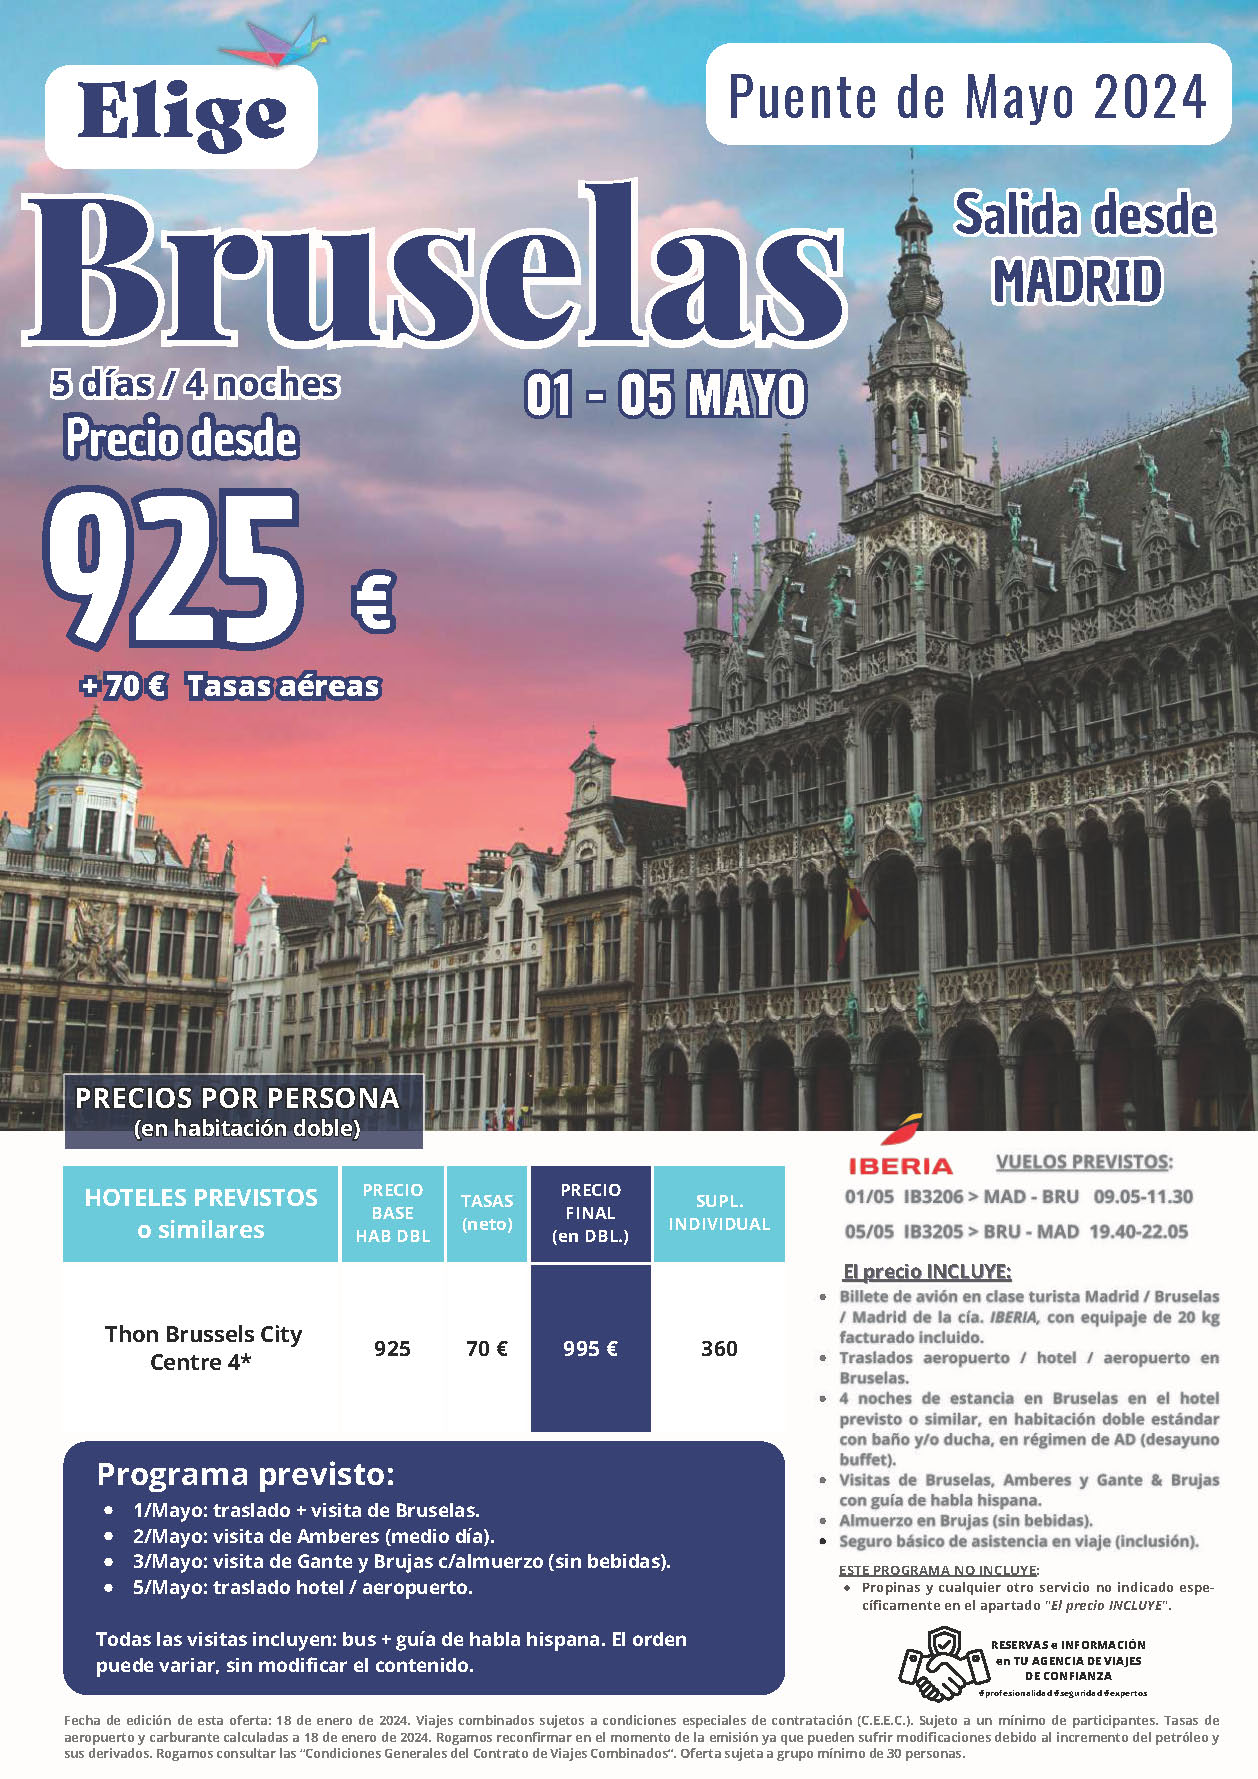 Oferta Elige tu Viaje Puente de Mayo 2024 circuito Bruselas 5 dias salida 1 de mayo vuelo directo desde Madrid